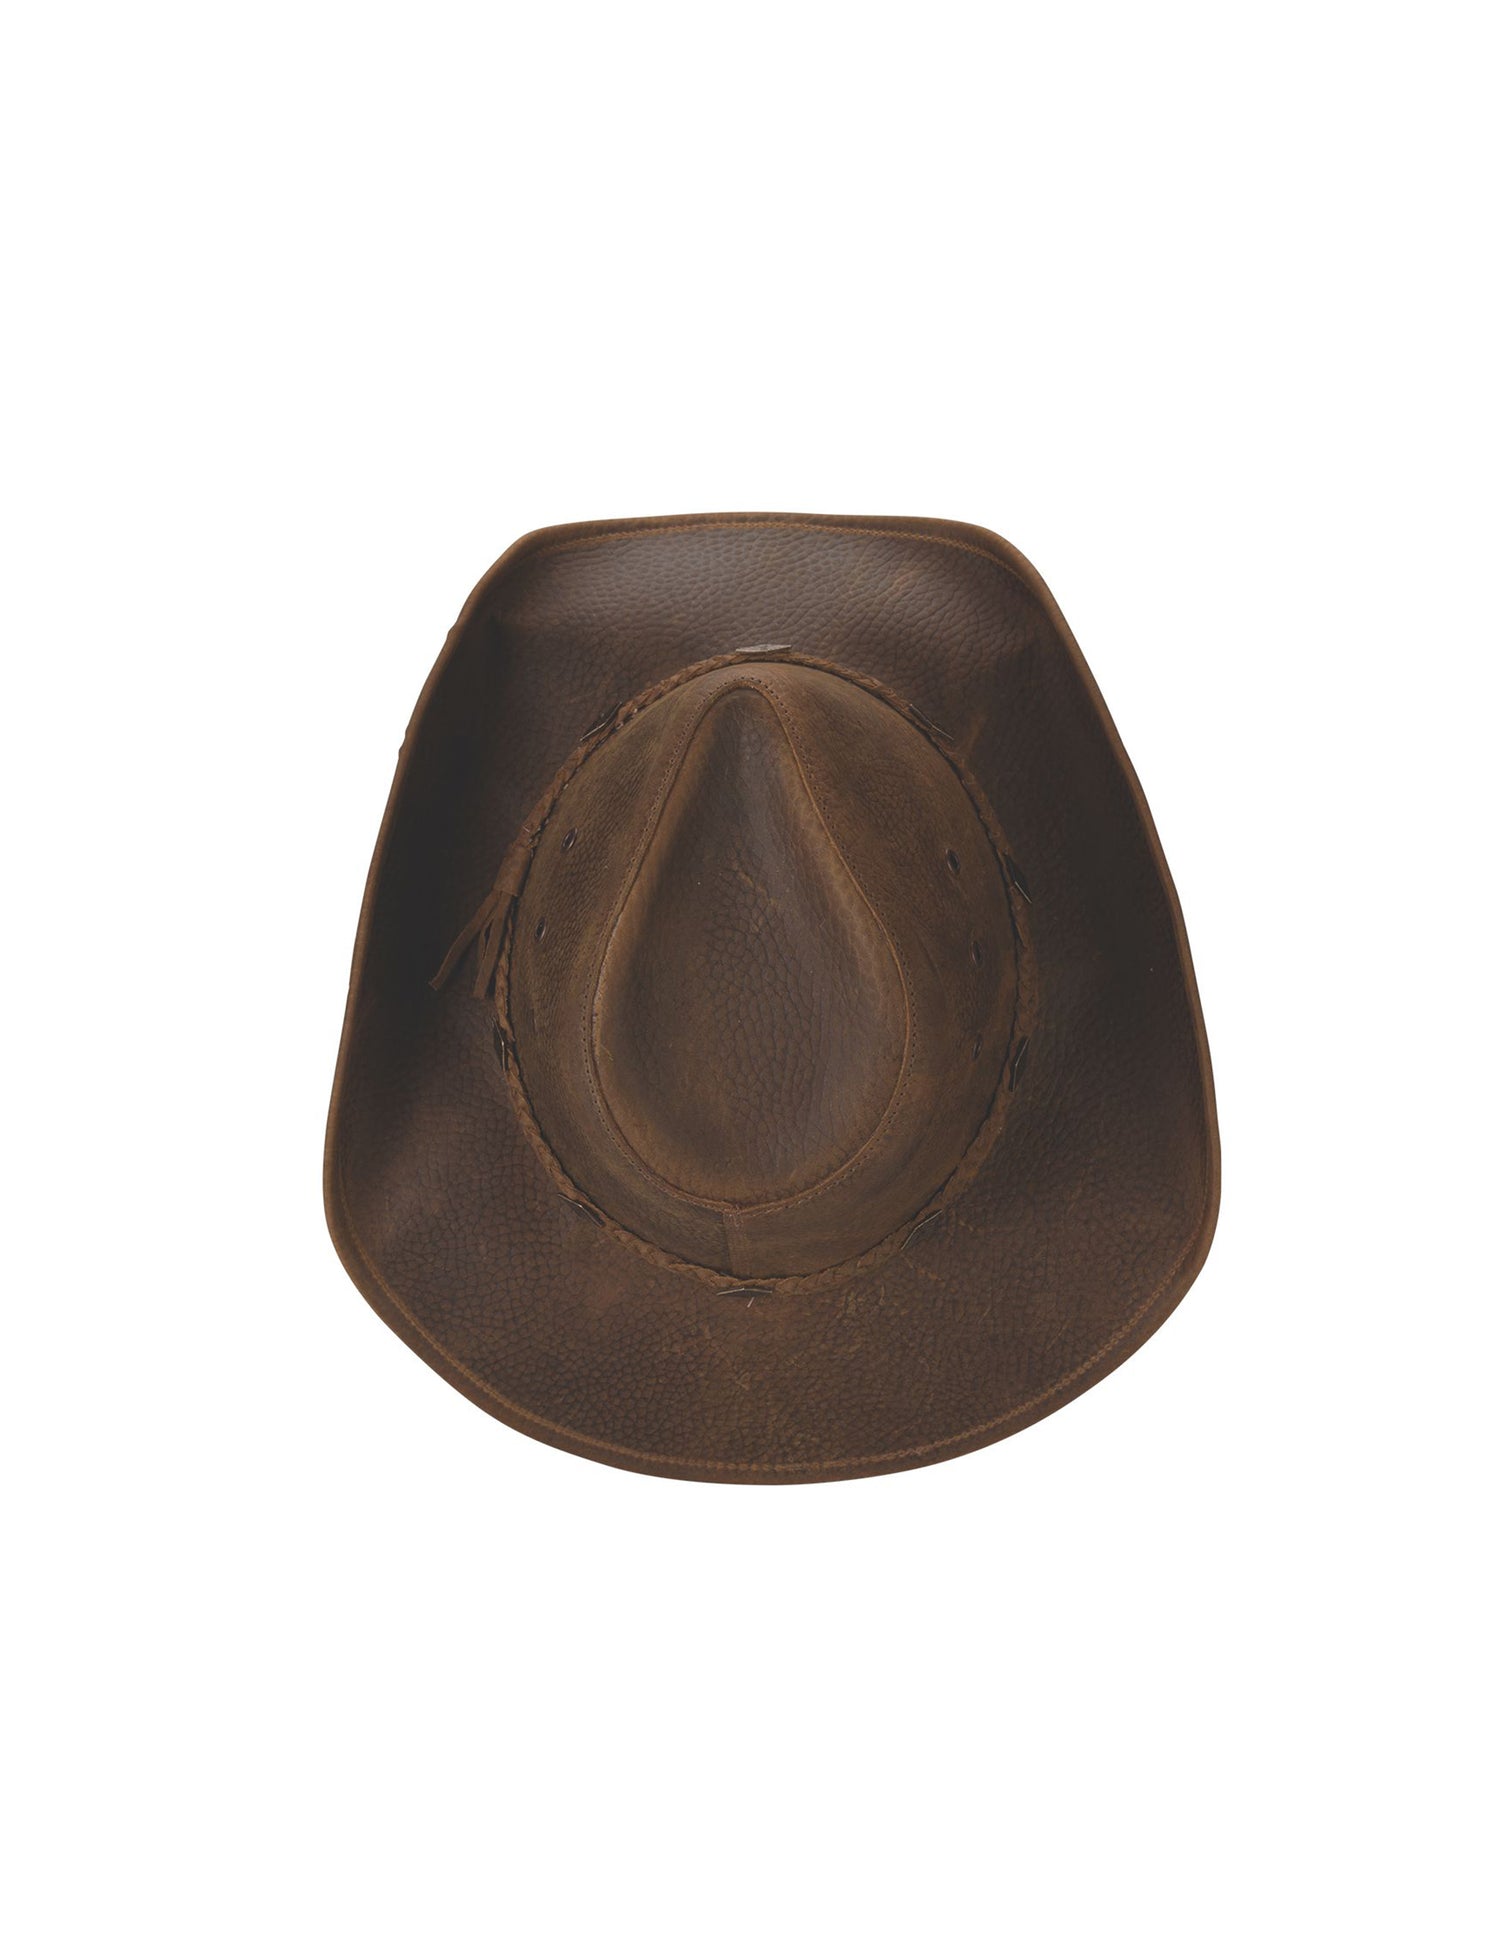 Bonnaroo Cowboy Hat by Bullhide